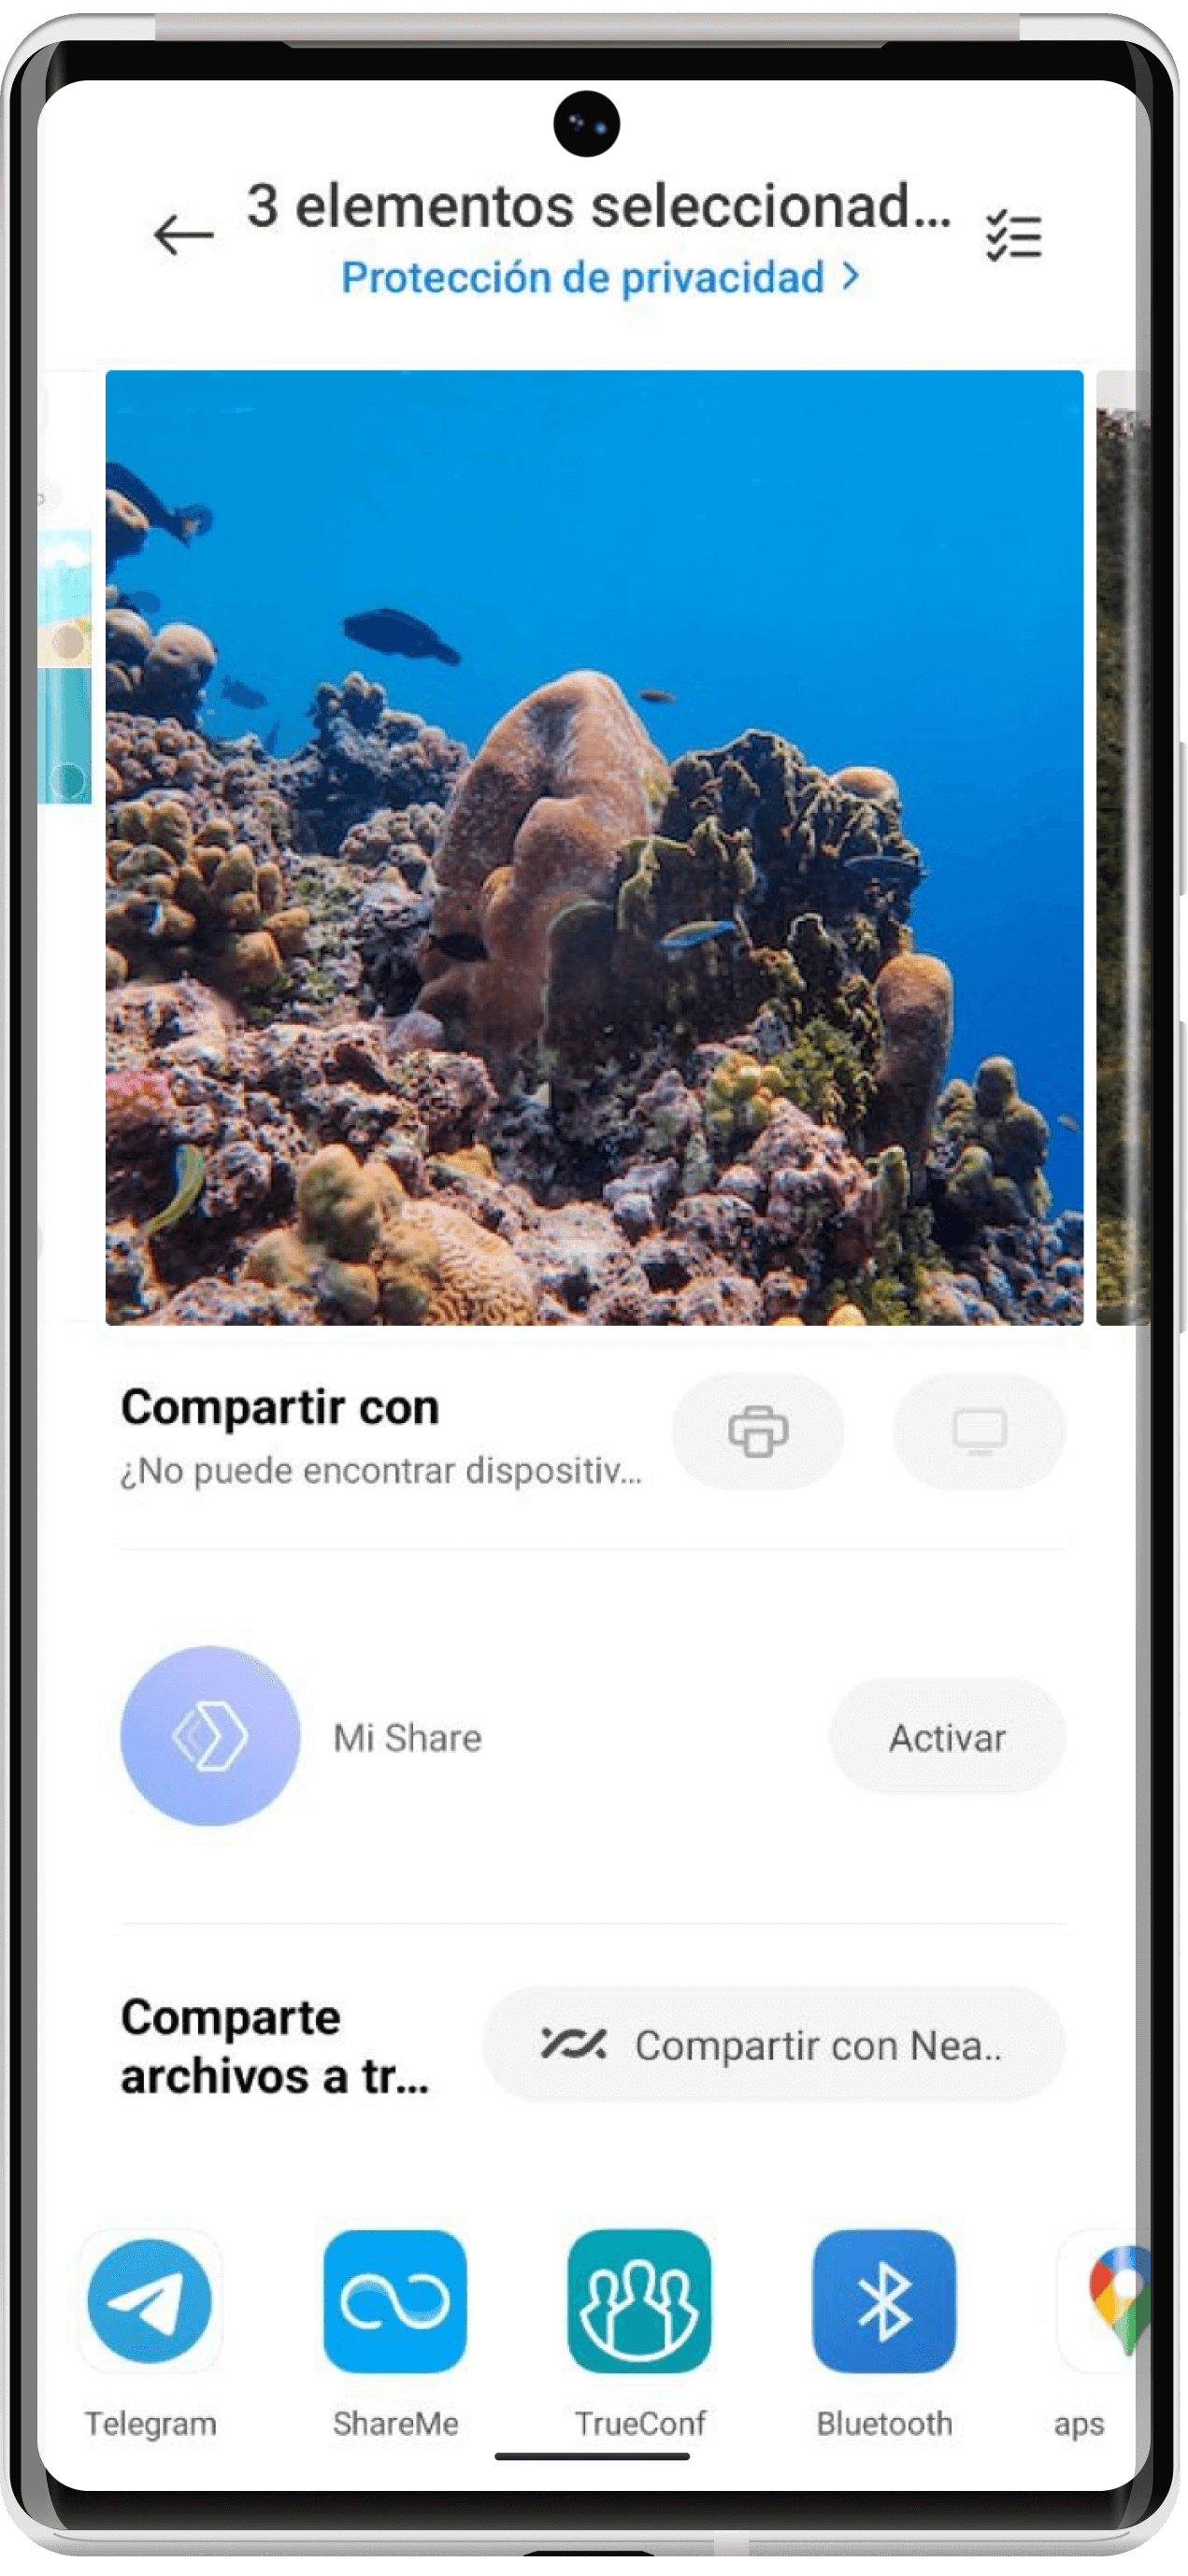 TrueConf 2.2 para Android: modo de solo audio y compartir archivos 7